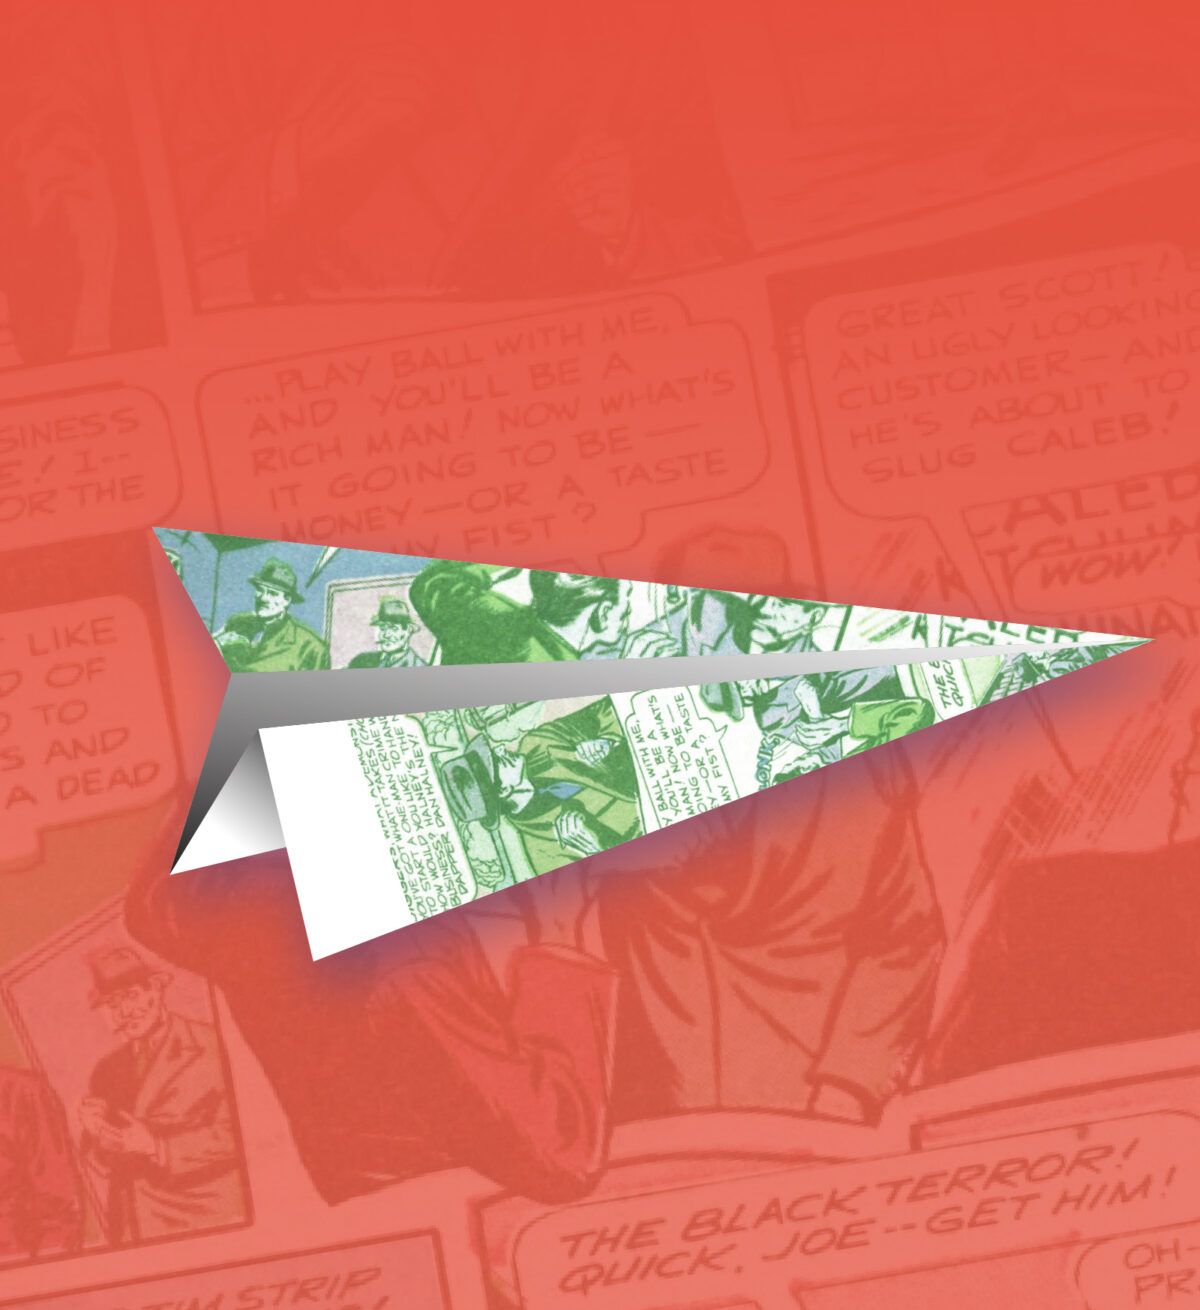 Papierowy samolot złożony z kartki z nadrukiem historyjki komiksowej